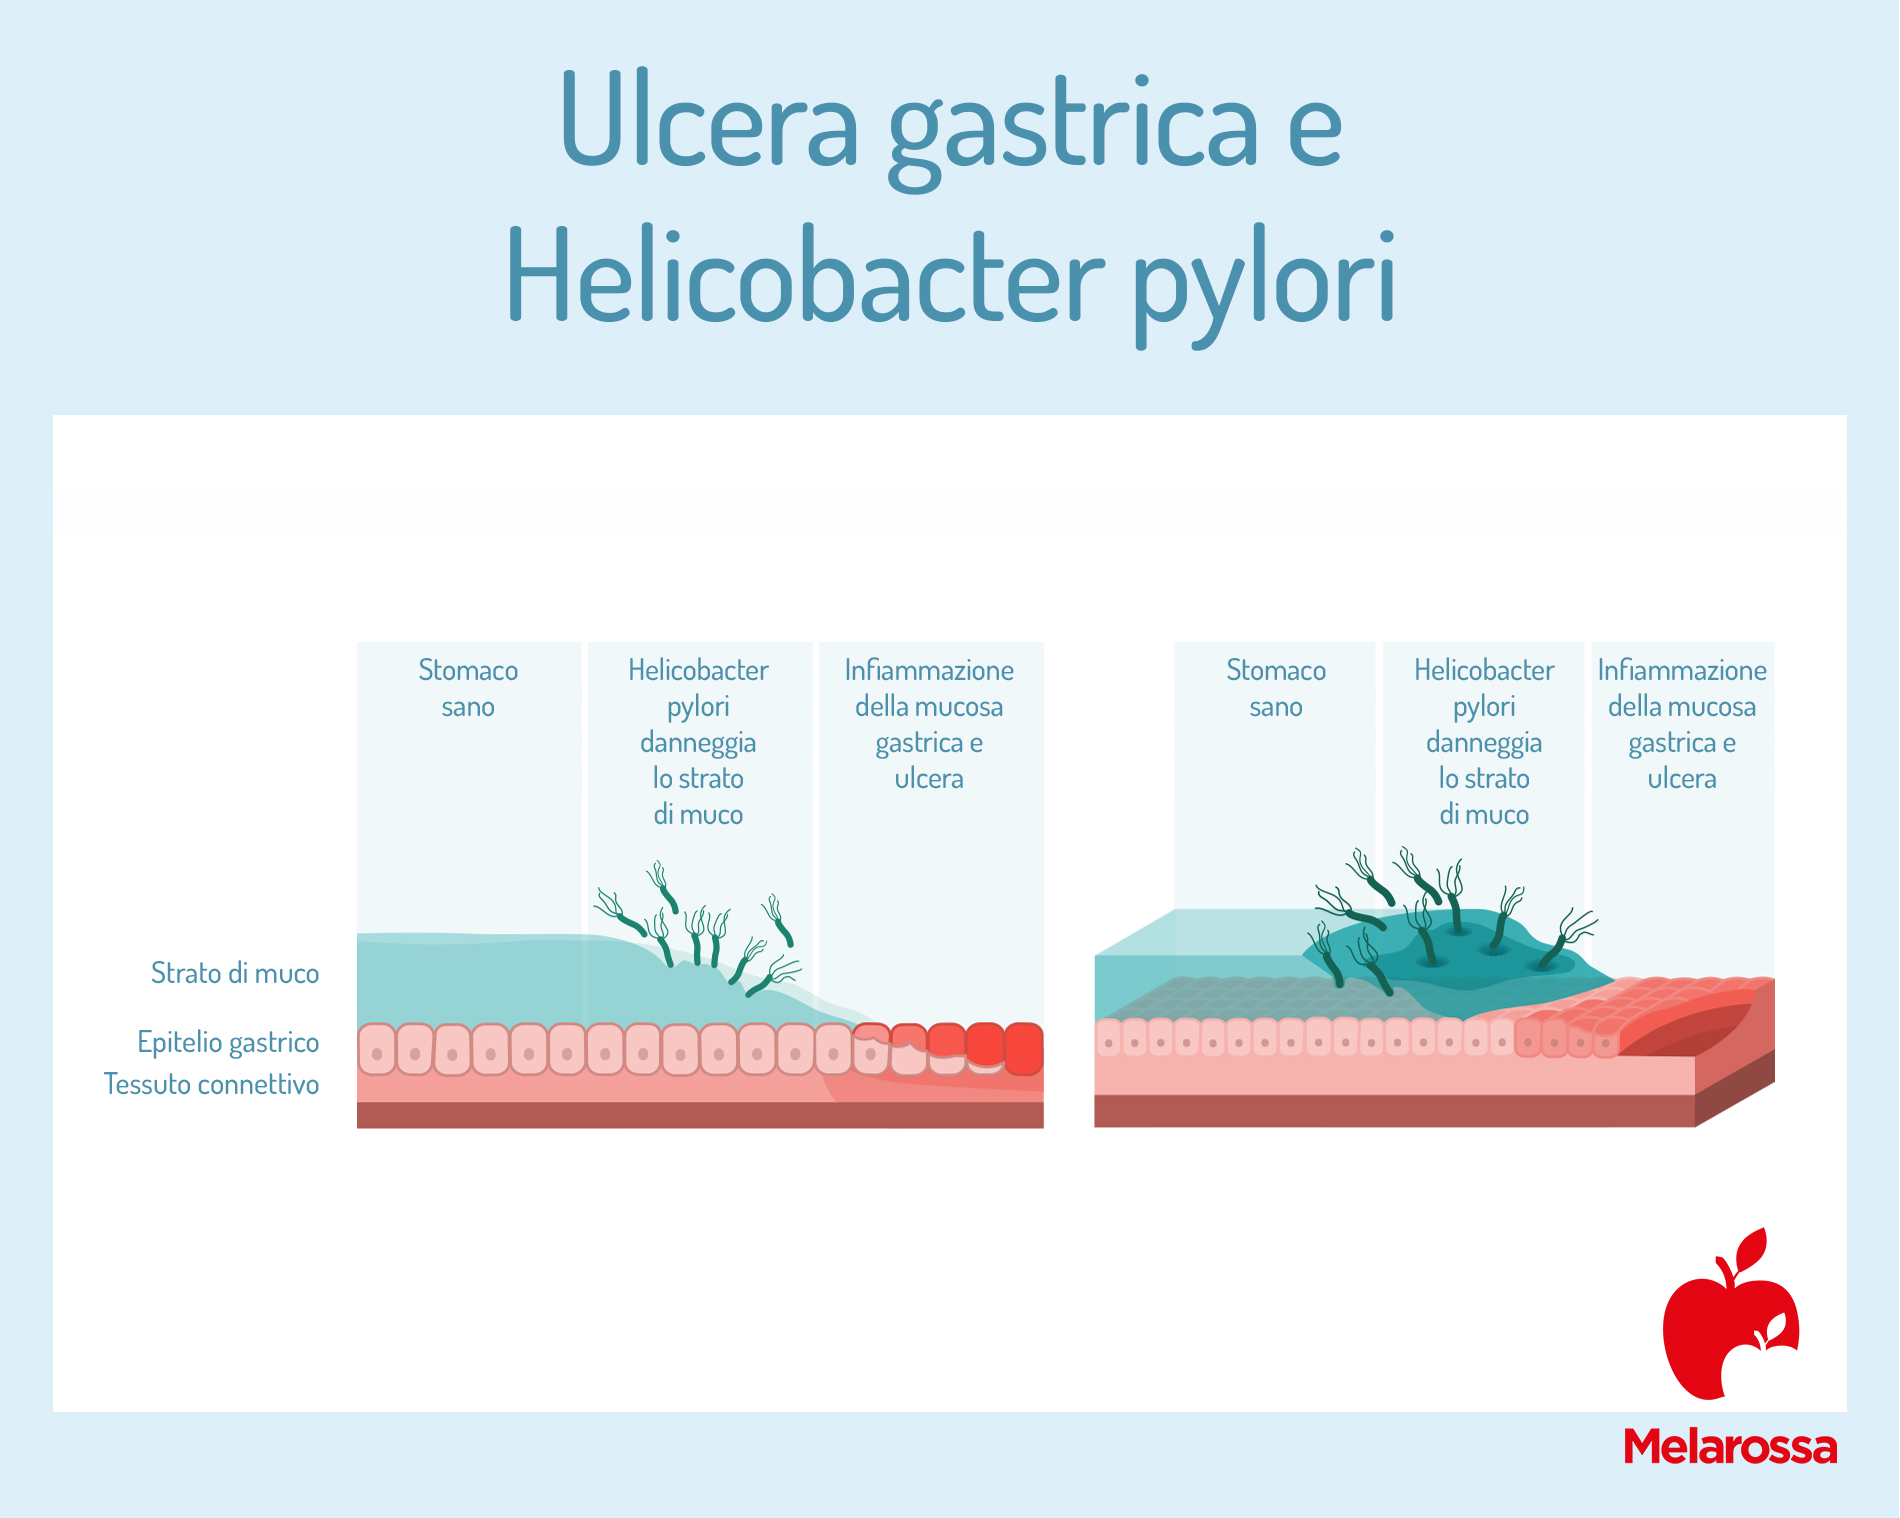 ulcera gastrica e helicobacter pylori